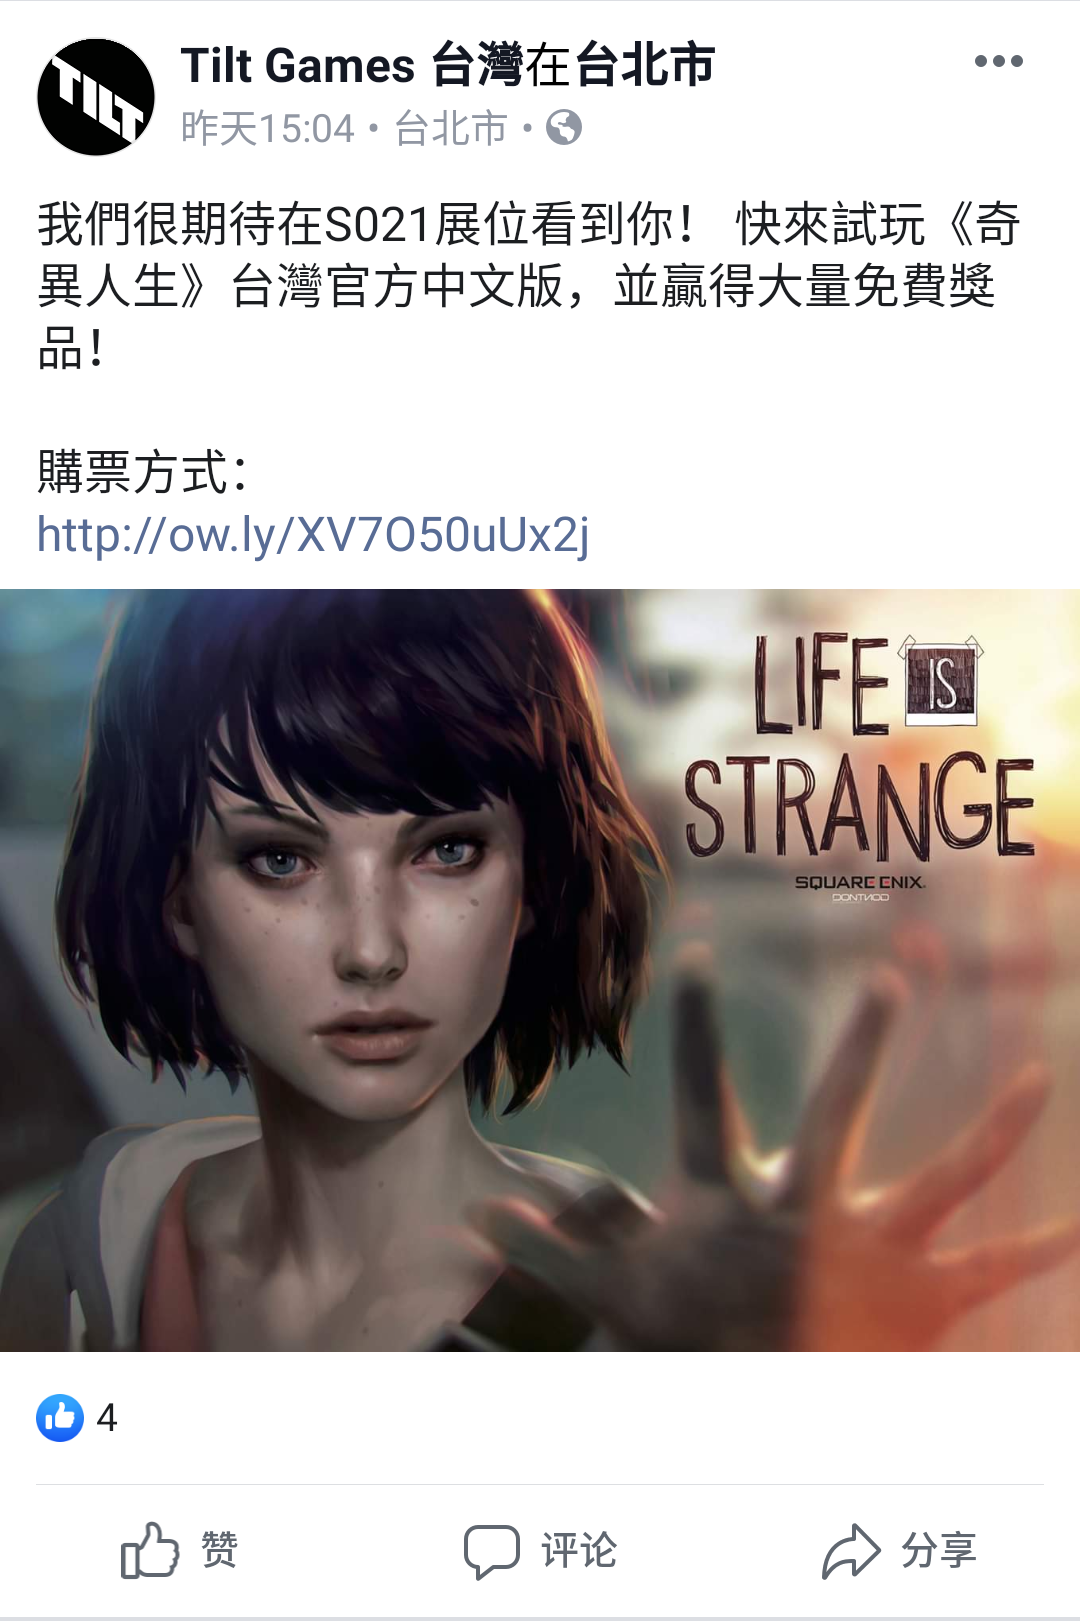 《奇妙人生1》將加入官方中文 繁中版預告片發布